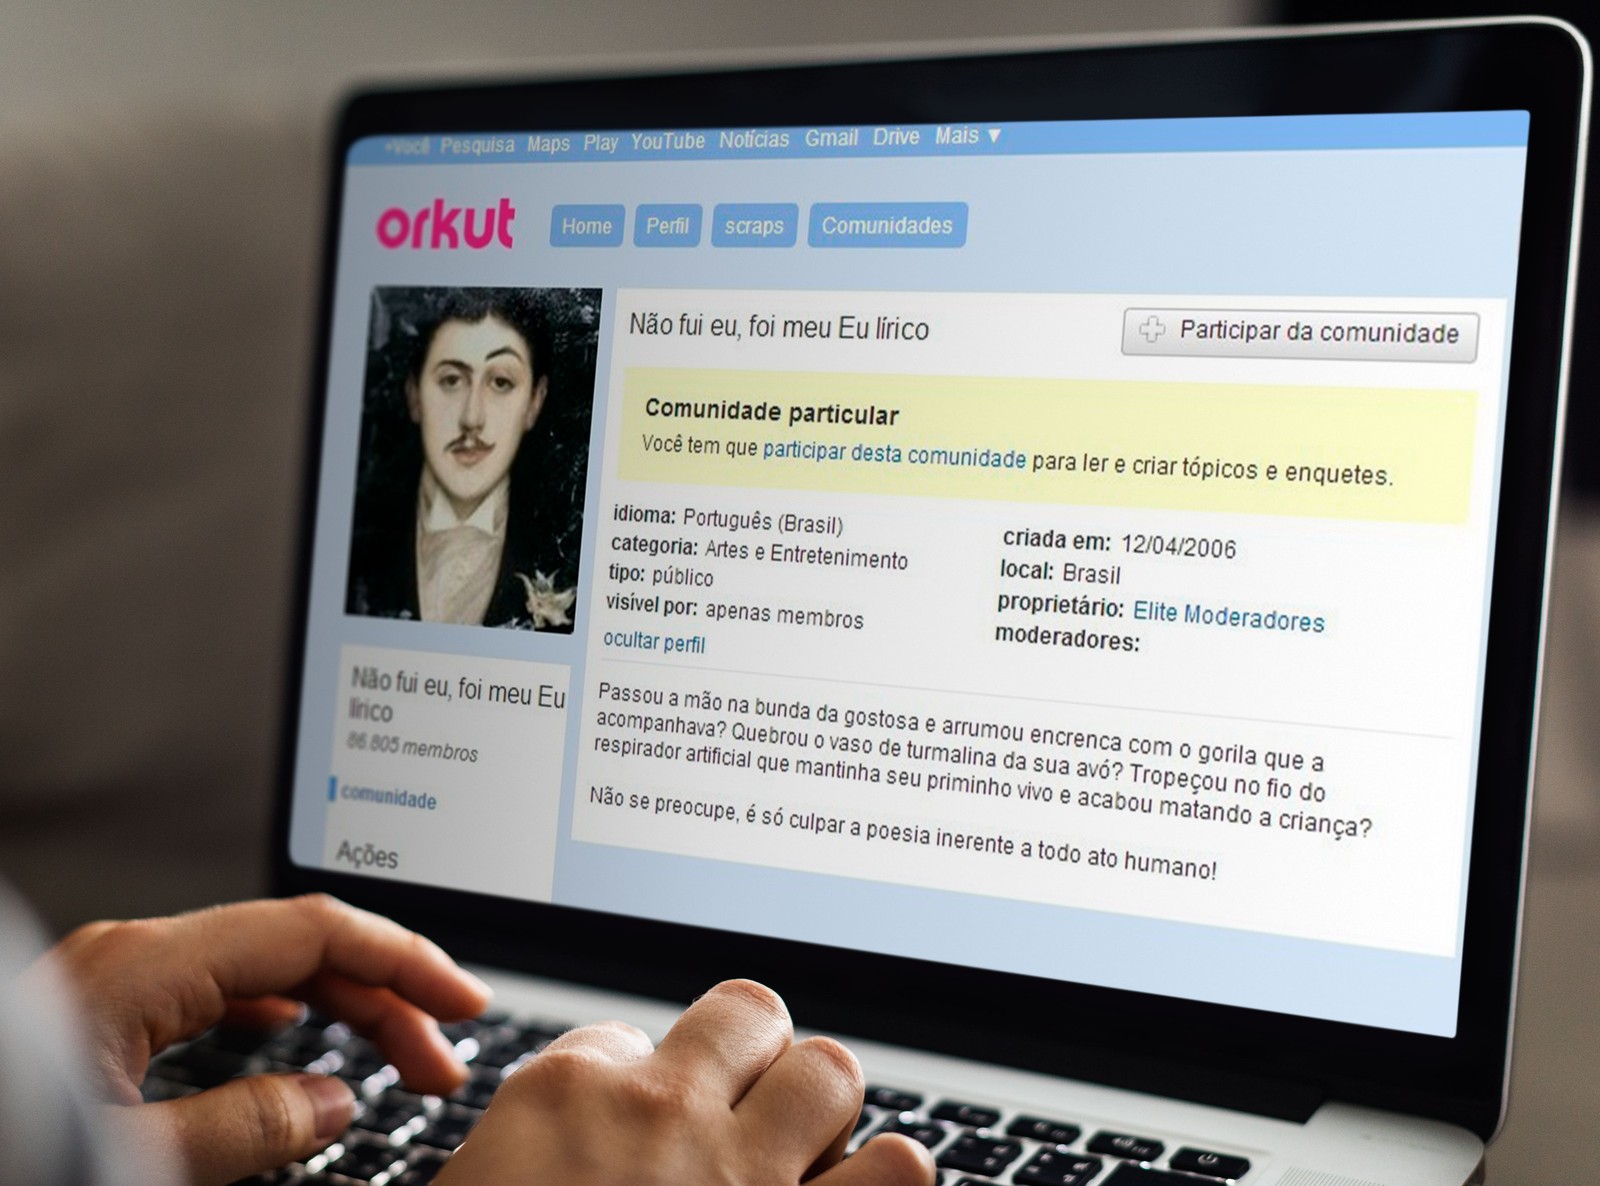 Com título bem-humorado, comunidade "Não fui eu, foi meu eu lírico" bombou no Orkut